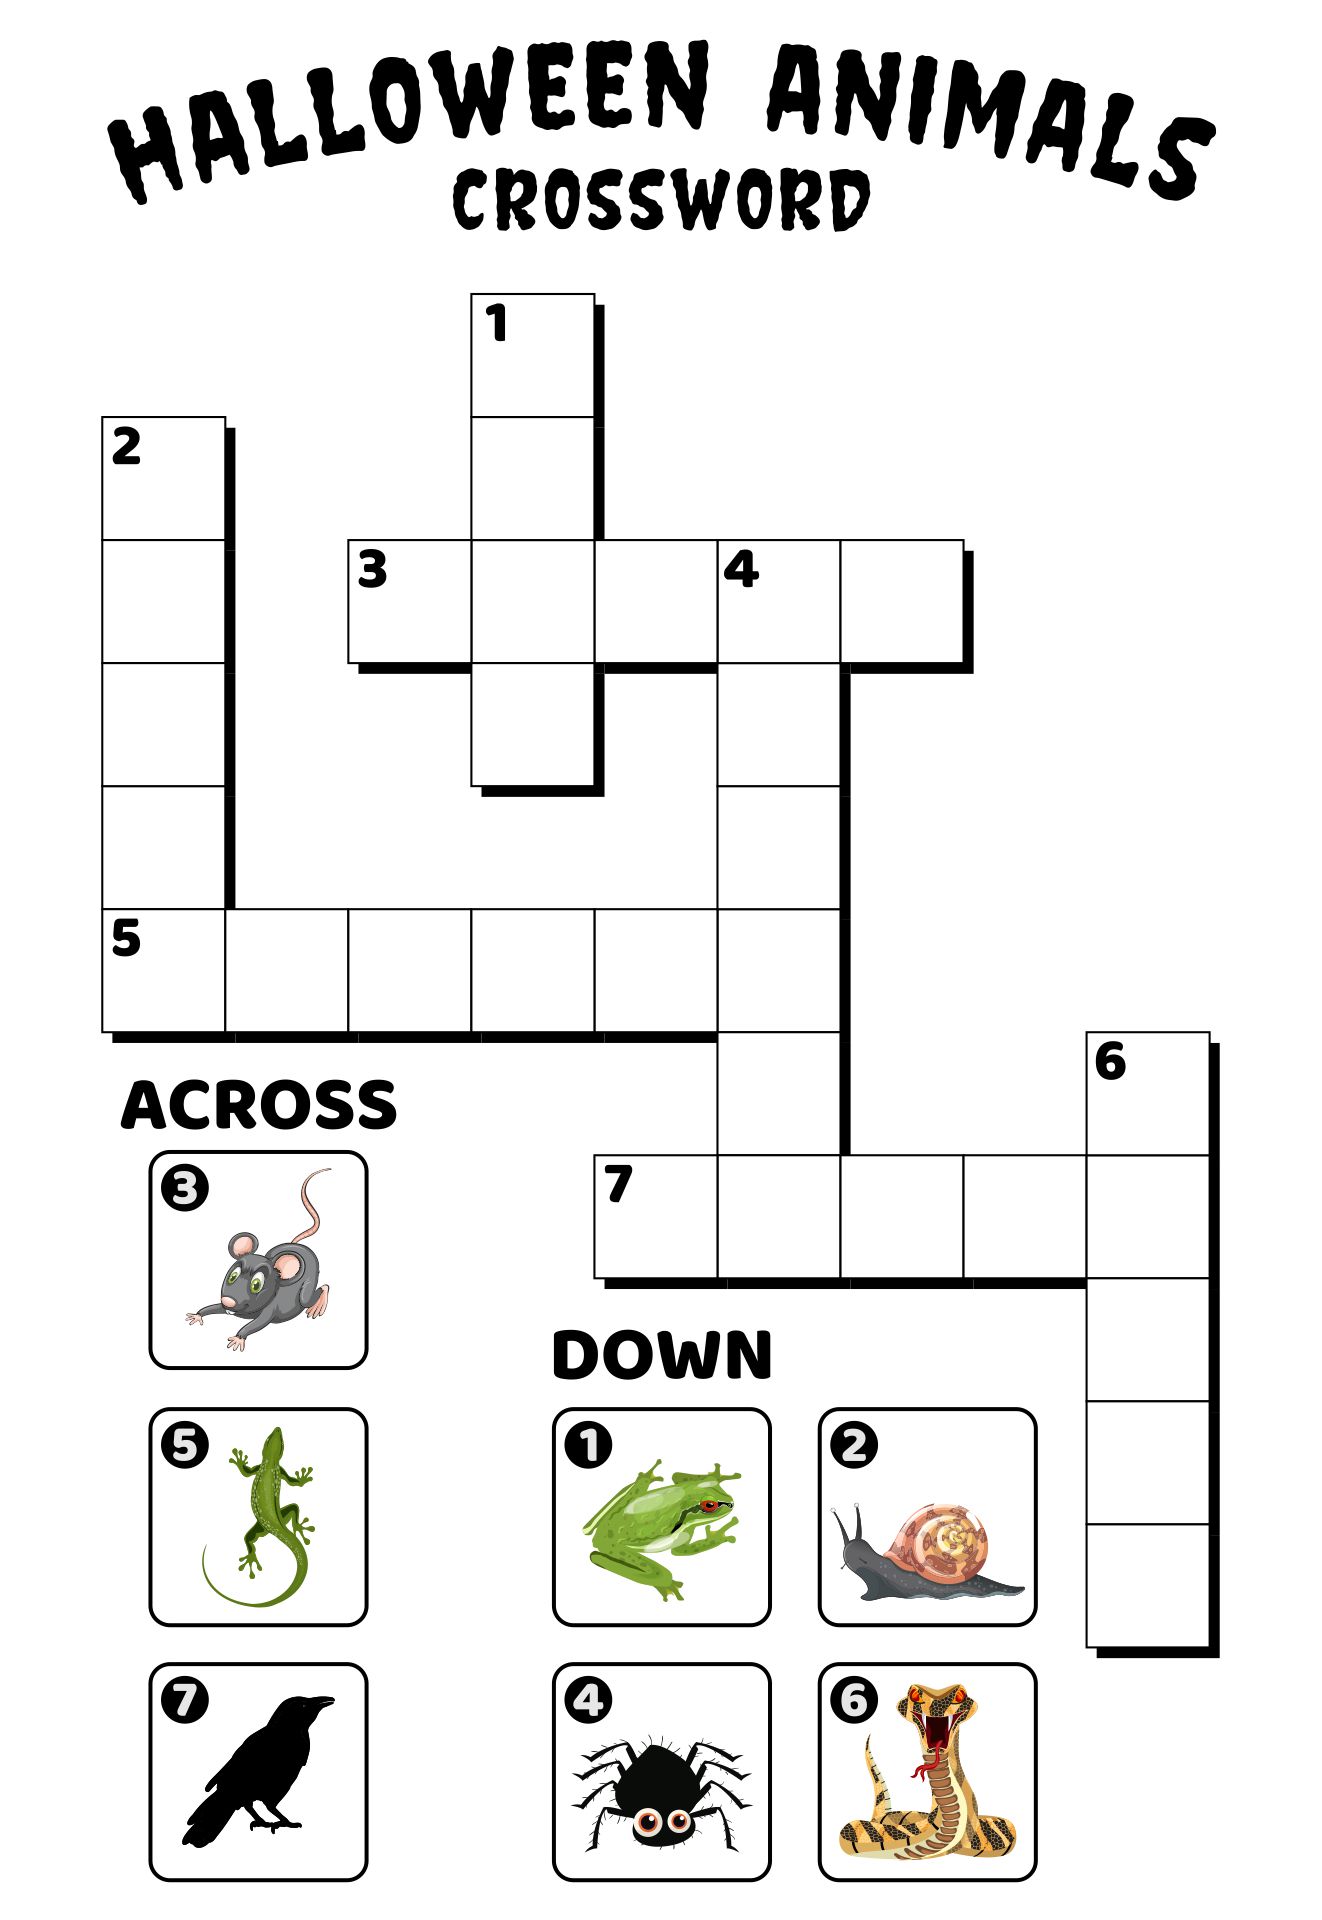 Halloween Animal Crossword Puzzle Printable